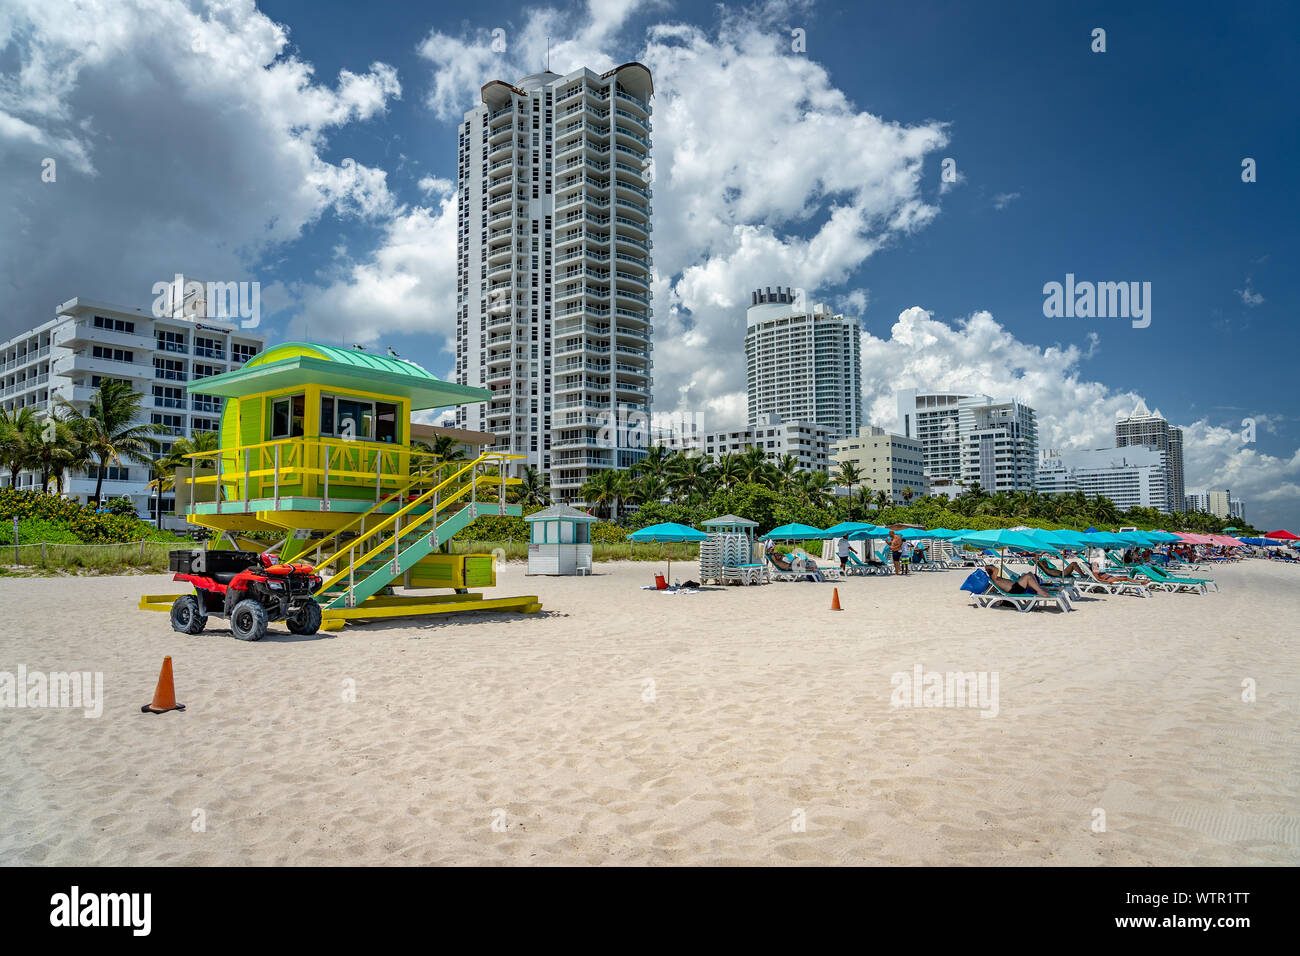 Miami Beach, Floride, USA - plage au milieu de l'enceinte de la plage Banque D'Images